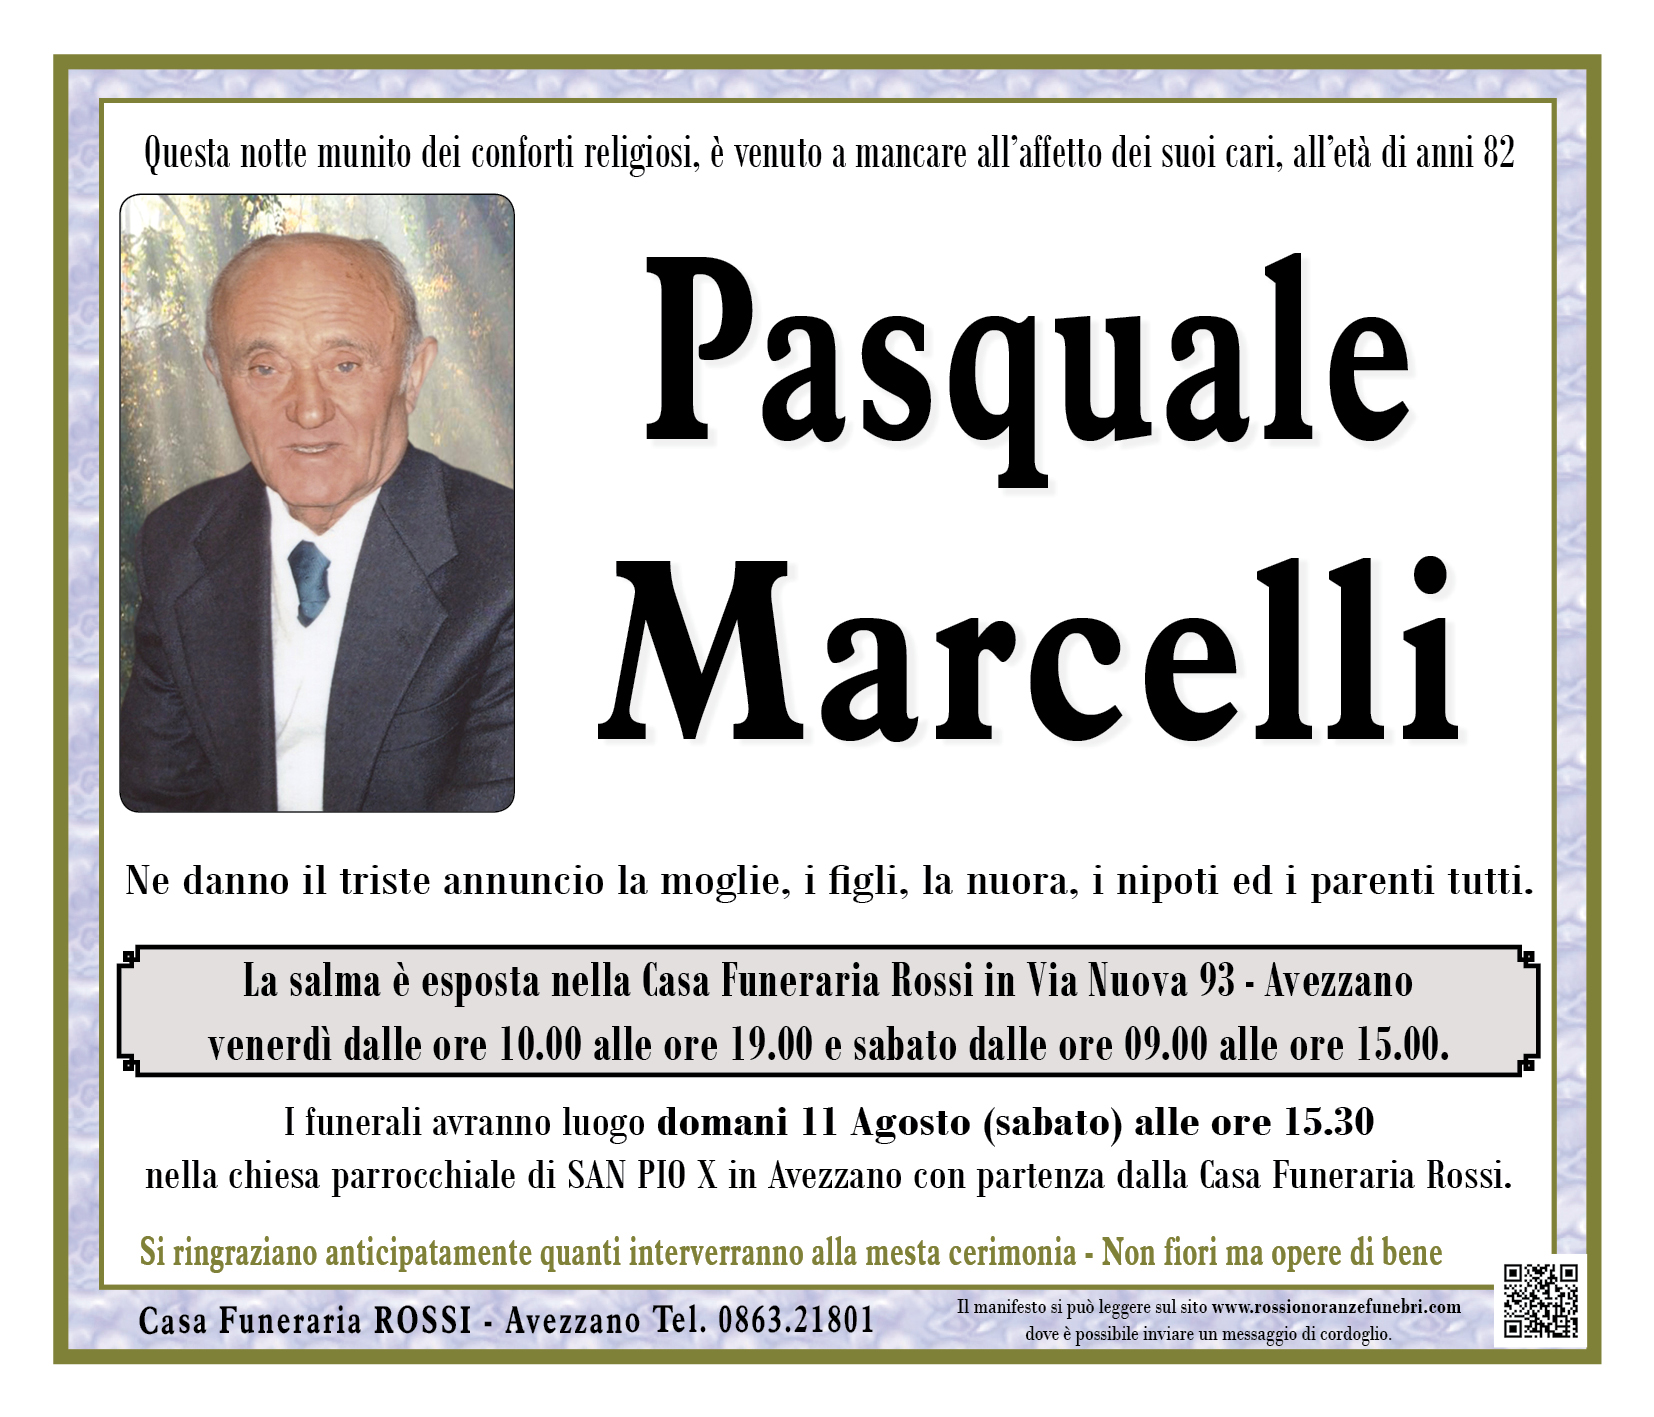 Pasquale Marcelli